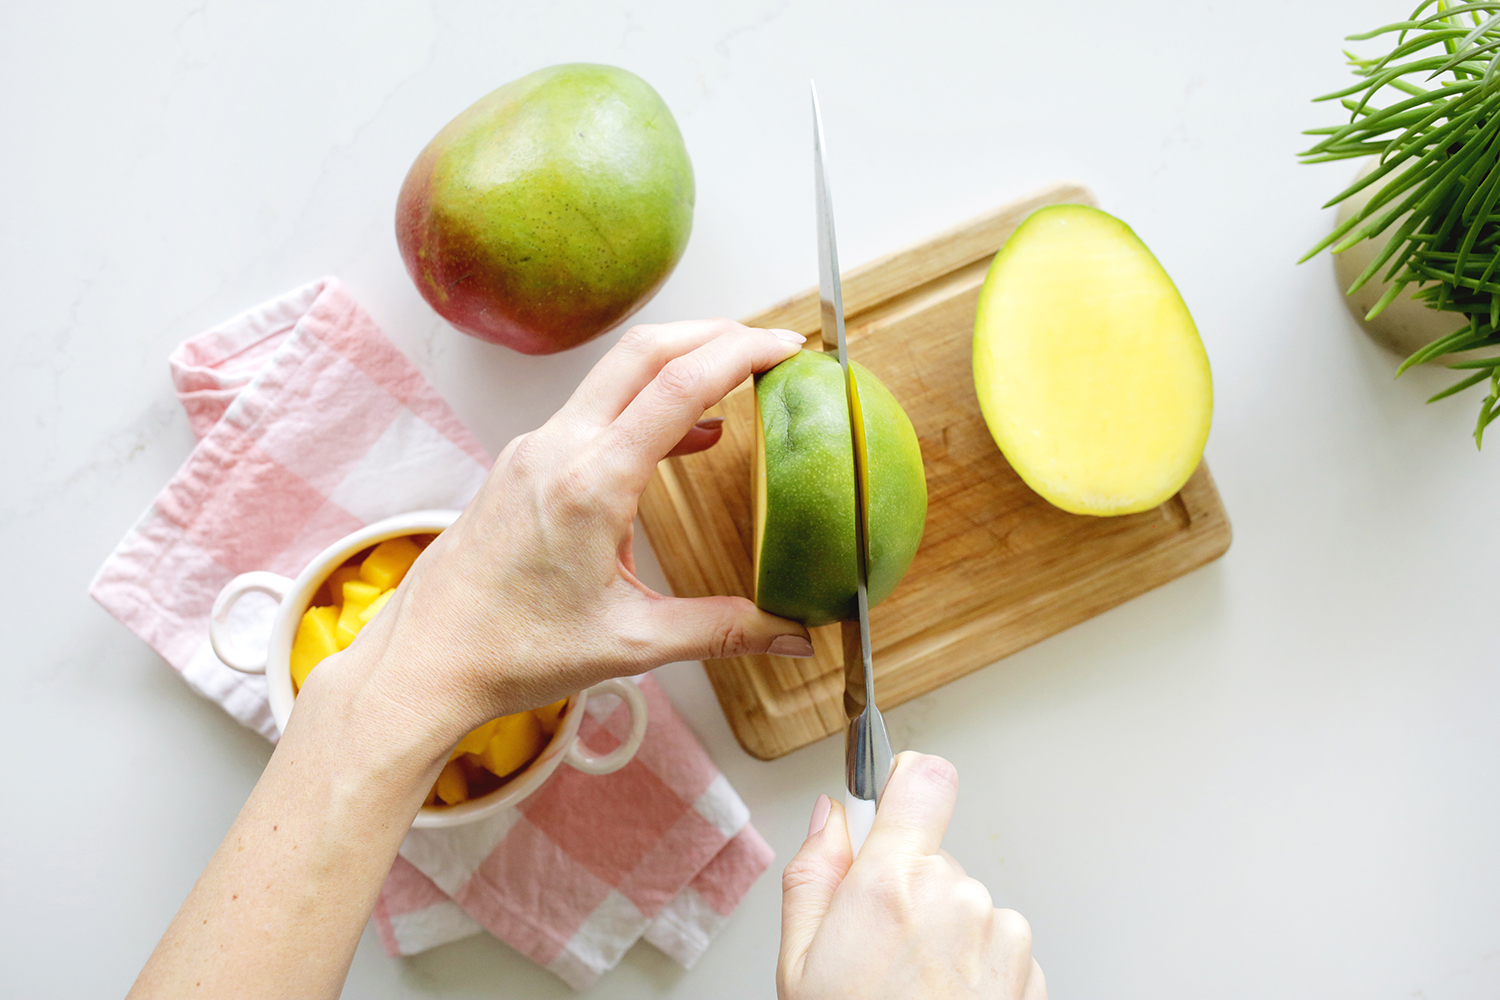 cutting mango on cutting board